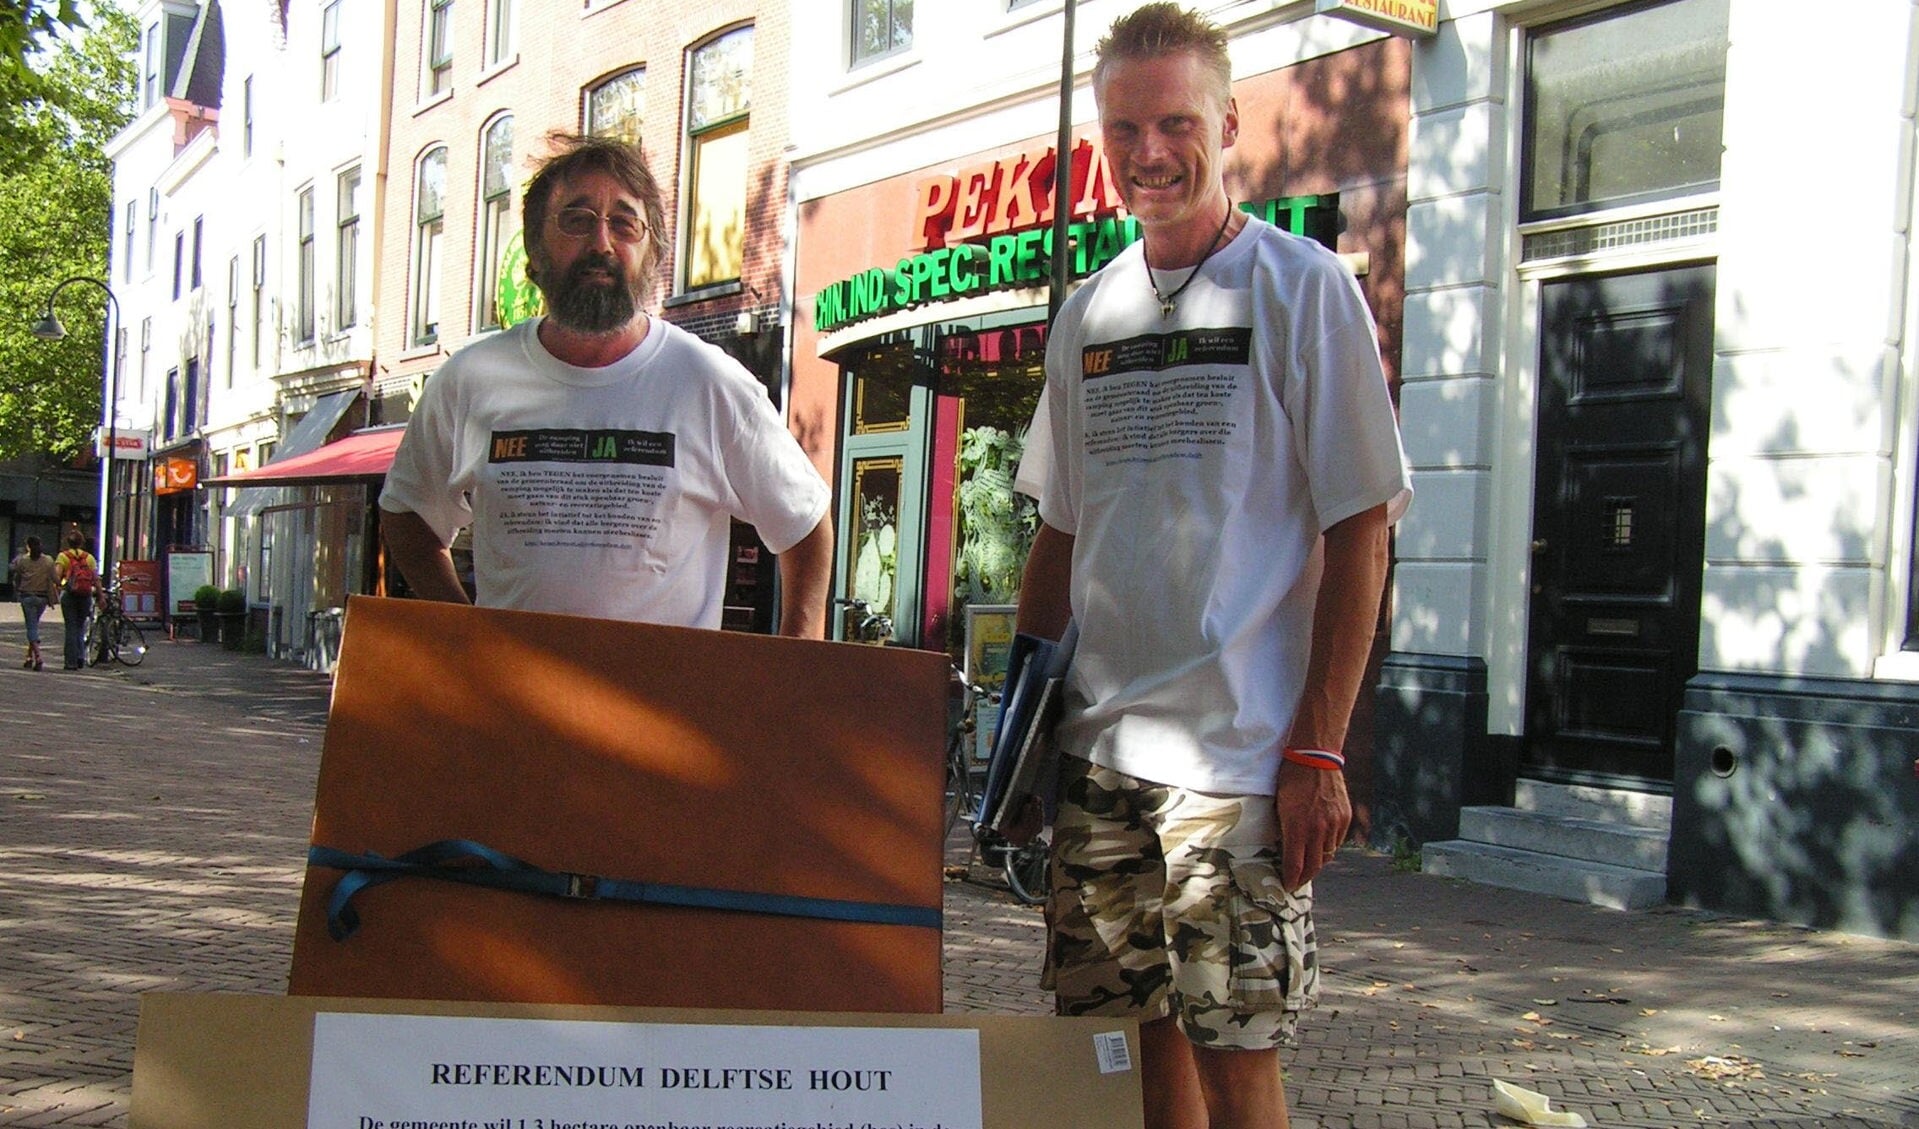 Het is precies tien jaar geleden dat Ravindra Kiel en Jan Peter de Wit op deze manier probeerden 4000 handtekeningen voor een referendum probeerden te verzamelen. Met succes. Het referendum over camping de Delftse Hout kwam er. De VVD wil hier nu vanaf. 